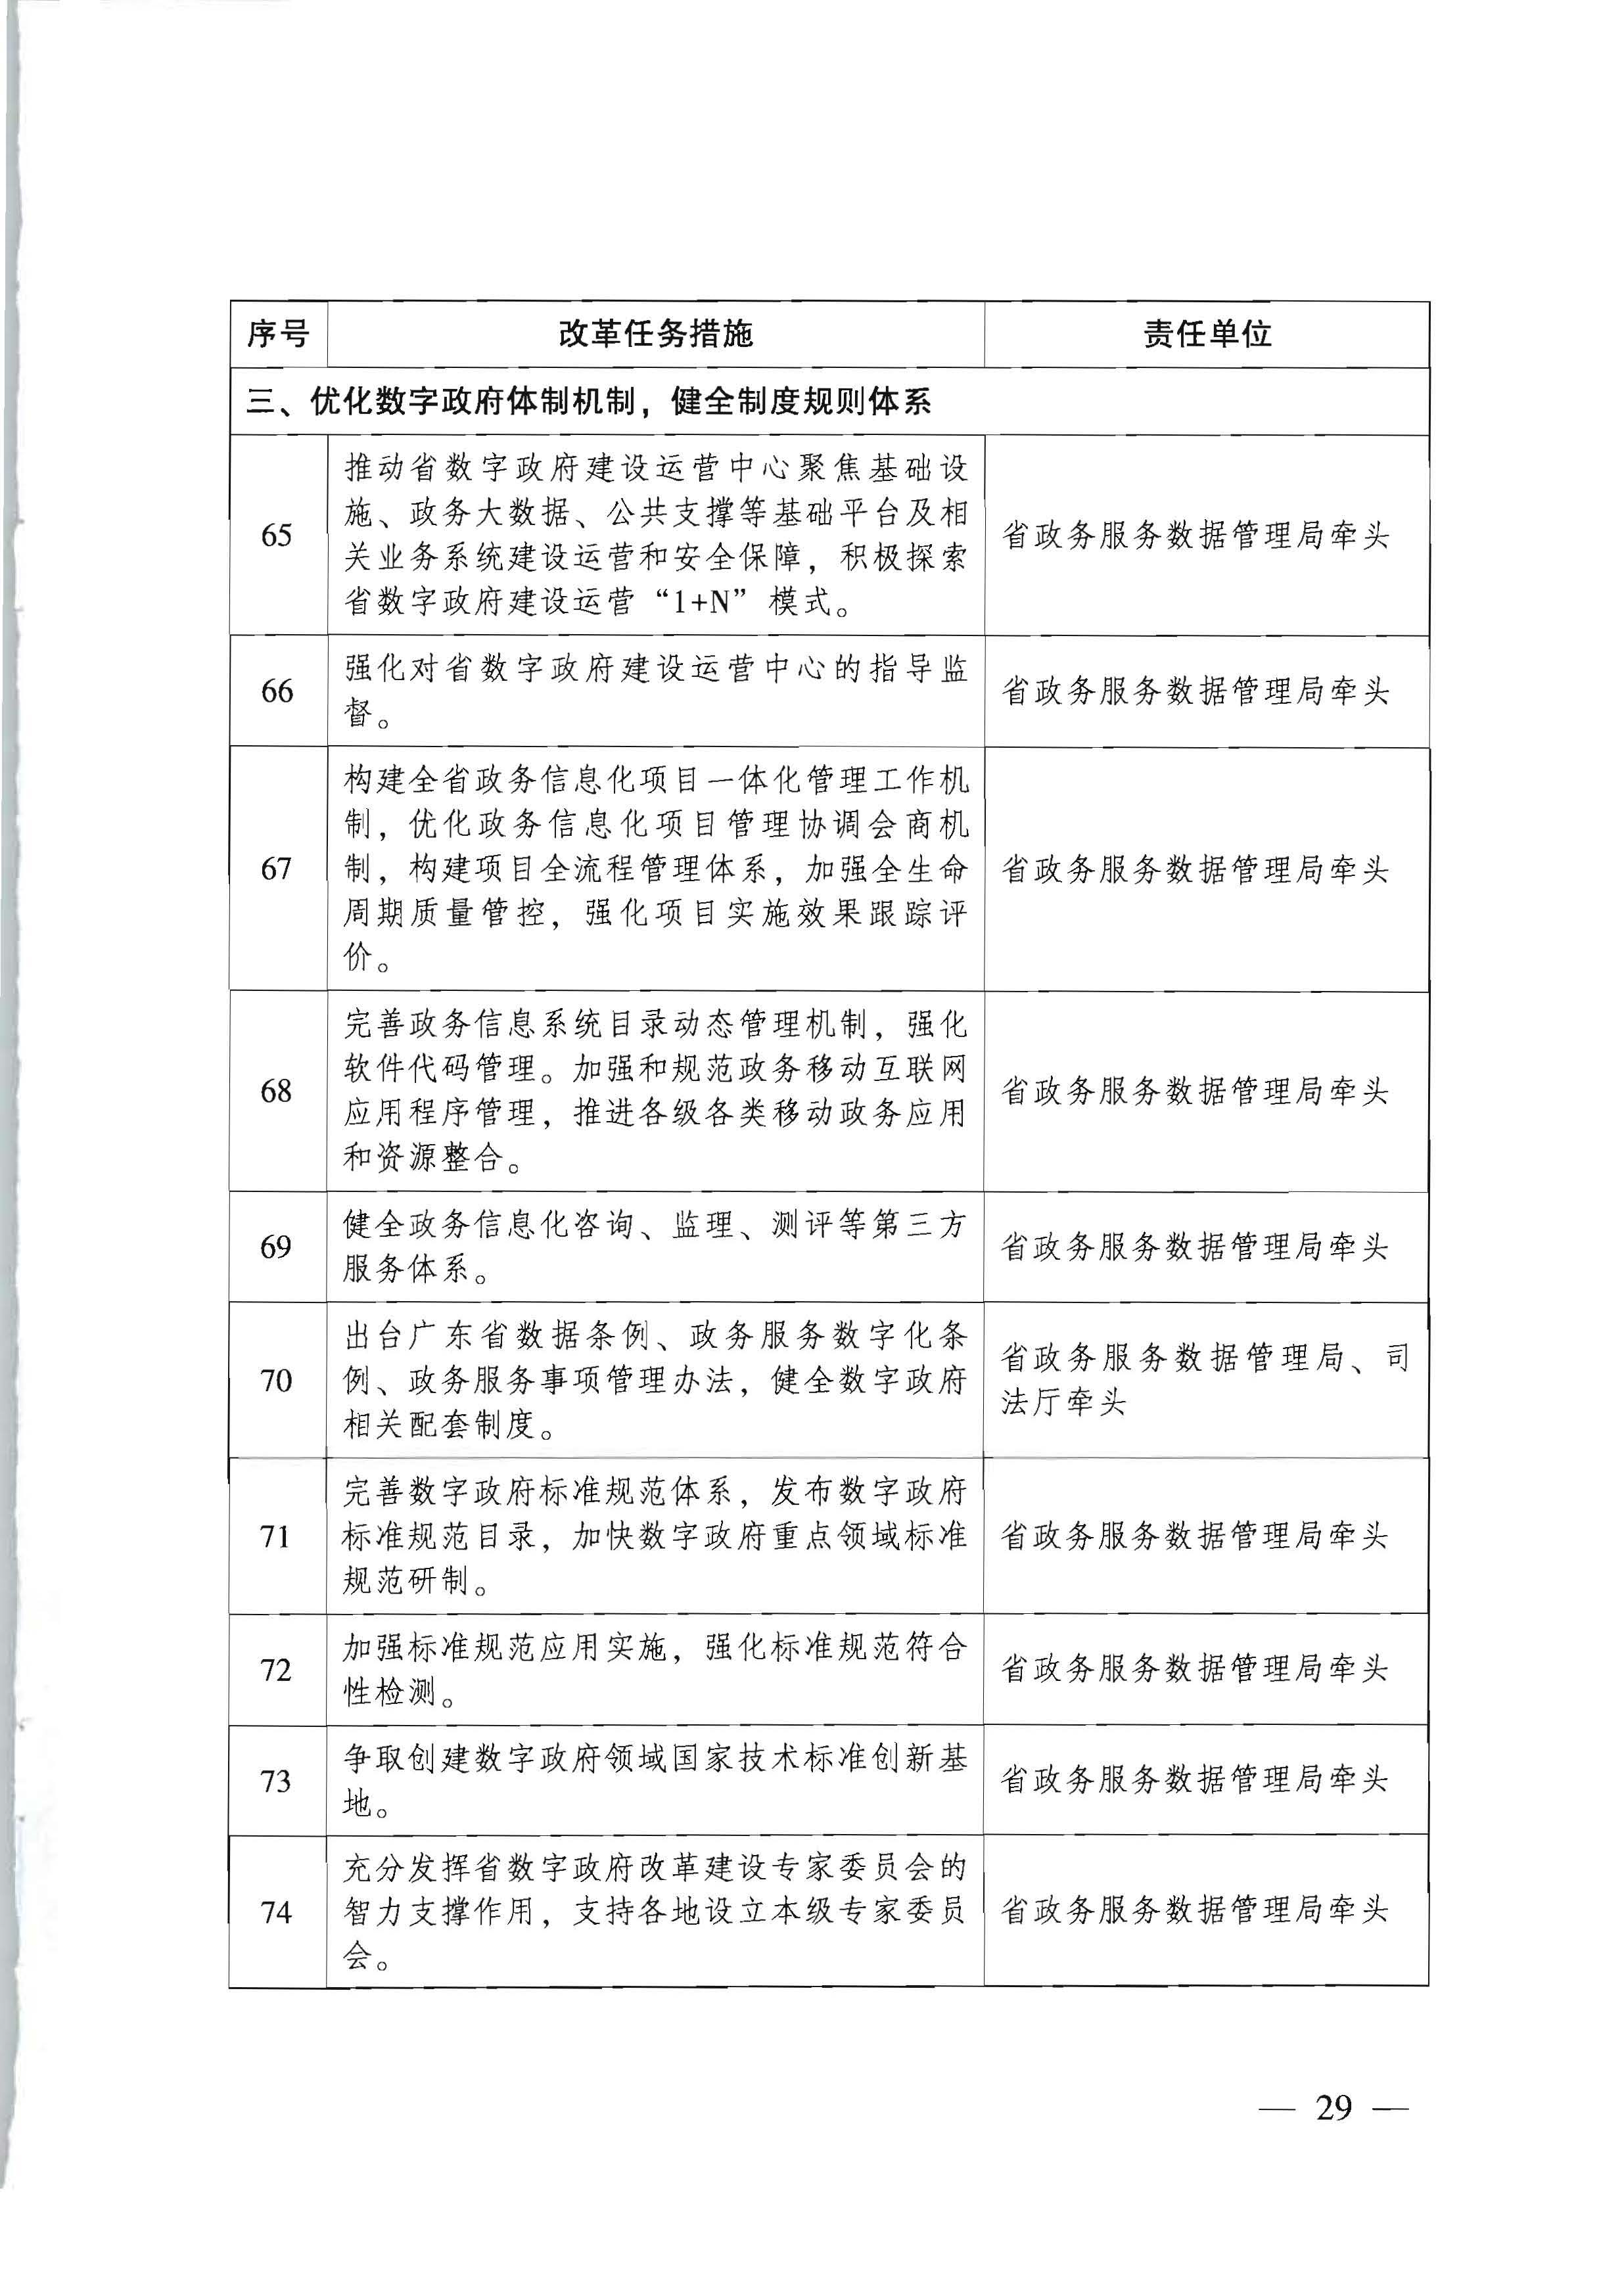 广东省人民政府关于进一步深化数字政府改革建设的实施意见_页面_29.jpg